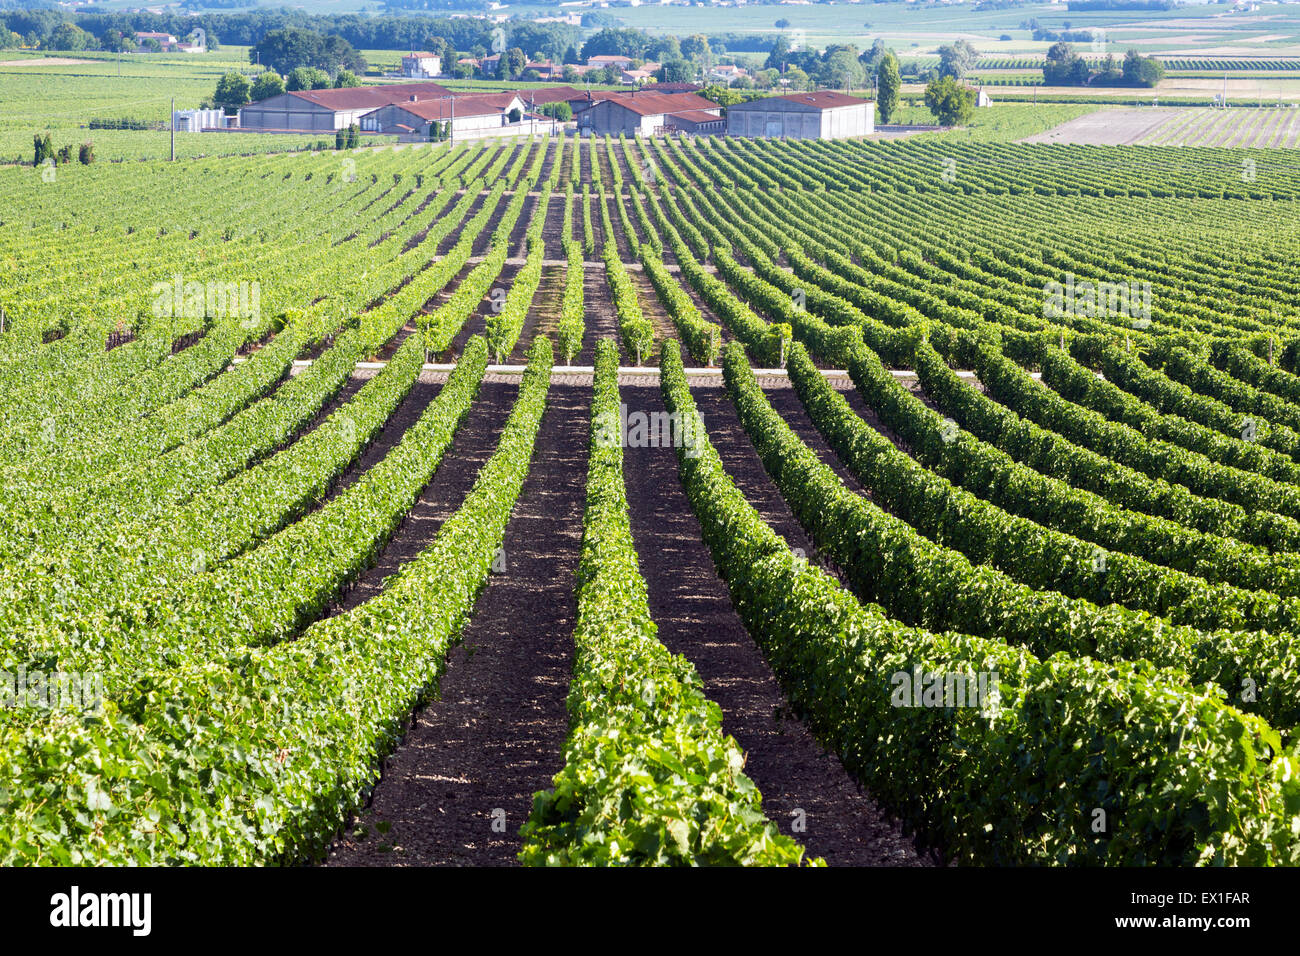 Vignes, Charentes, sud ouest France Banque D'Images